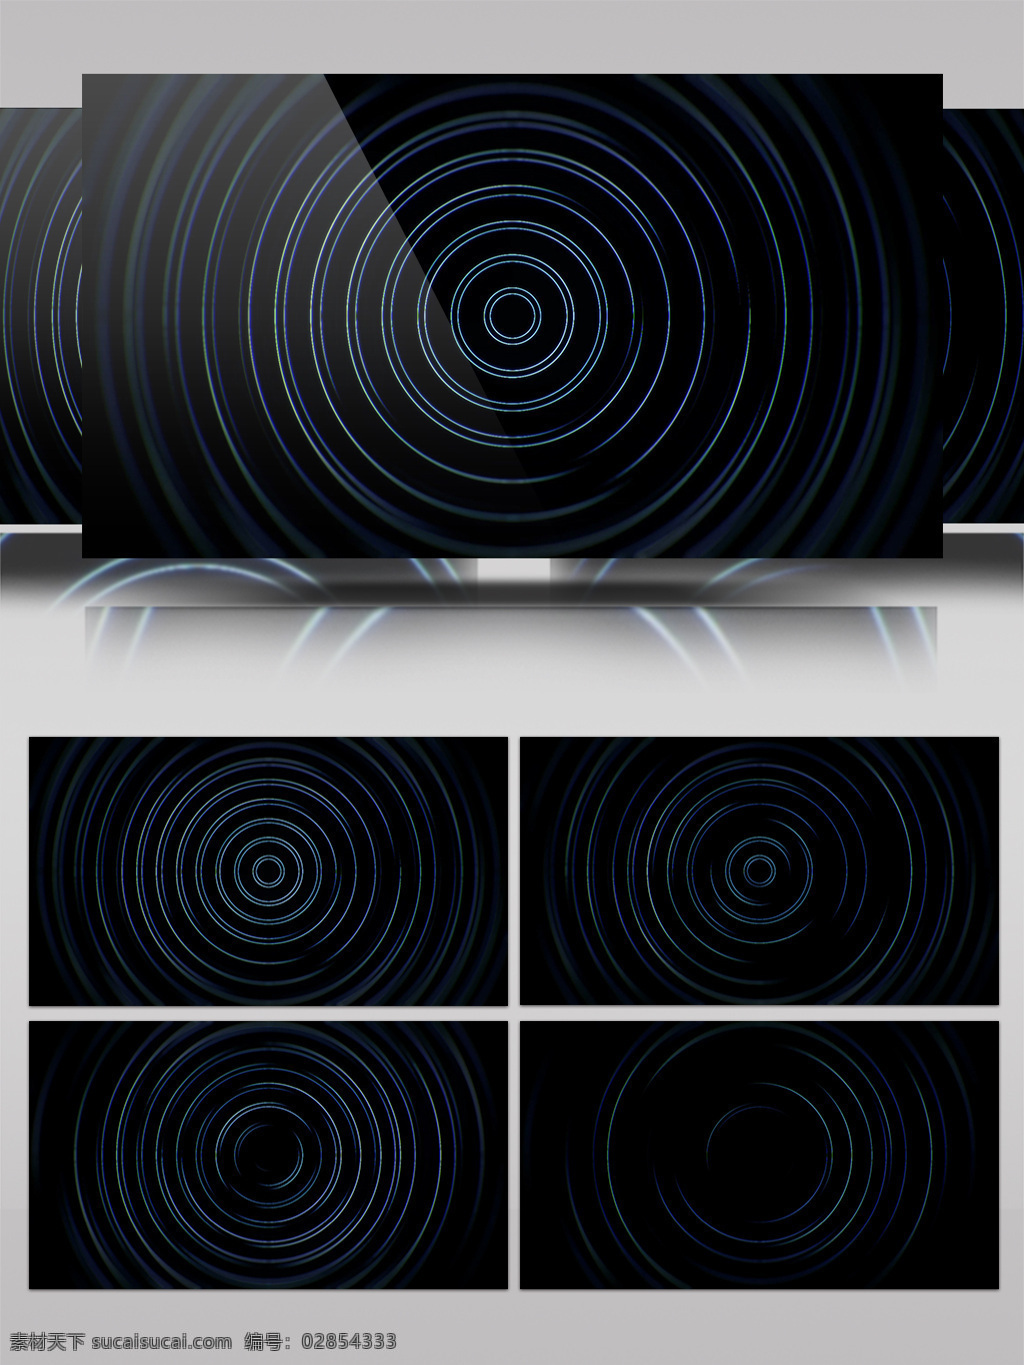 黑色 吞噬 轮 环视 频 简约黑色风格 轮环风格 立体几何 装饰风格 动态展示 壁纸图案 高清 背景 视频 特效